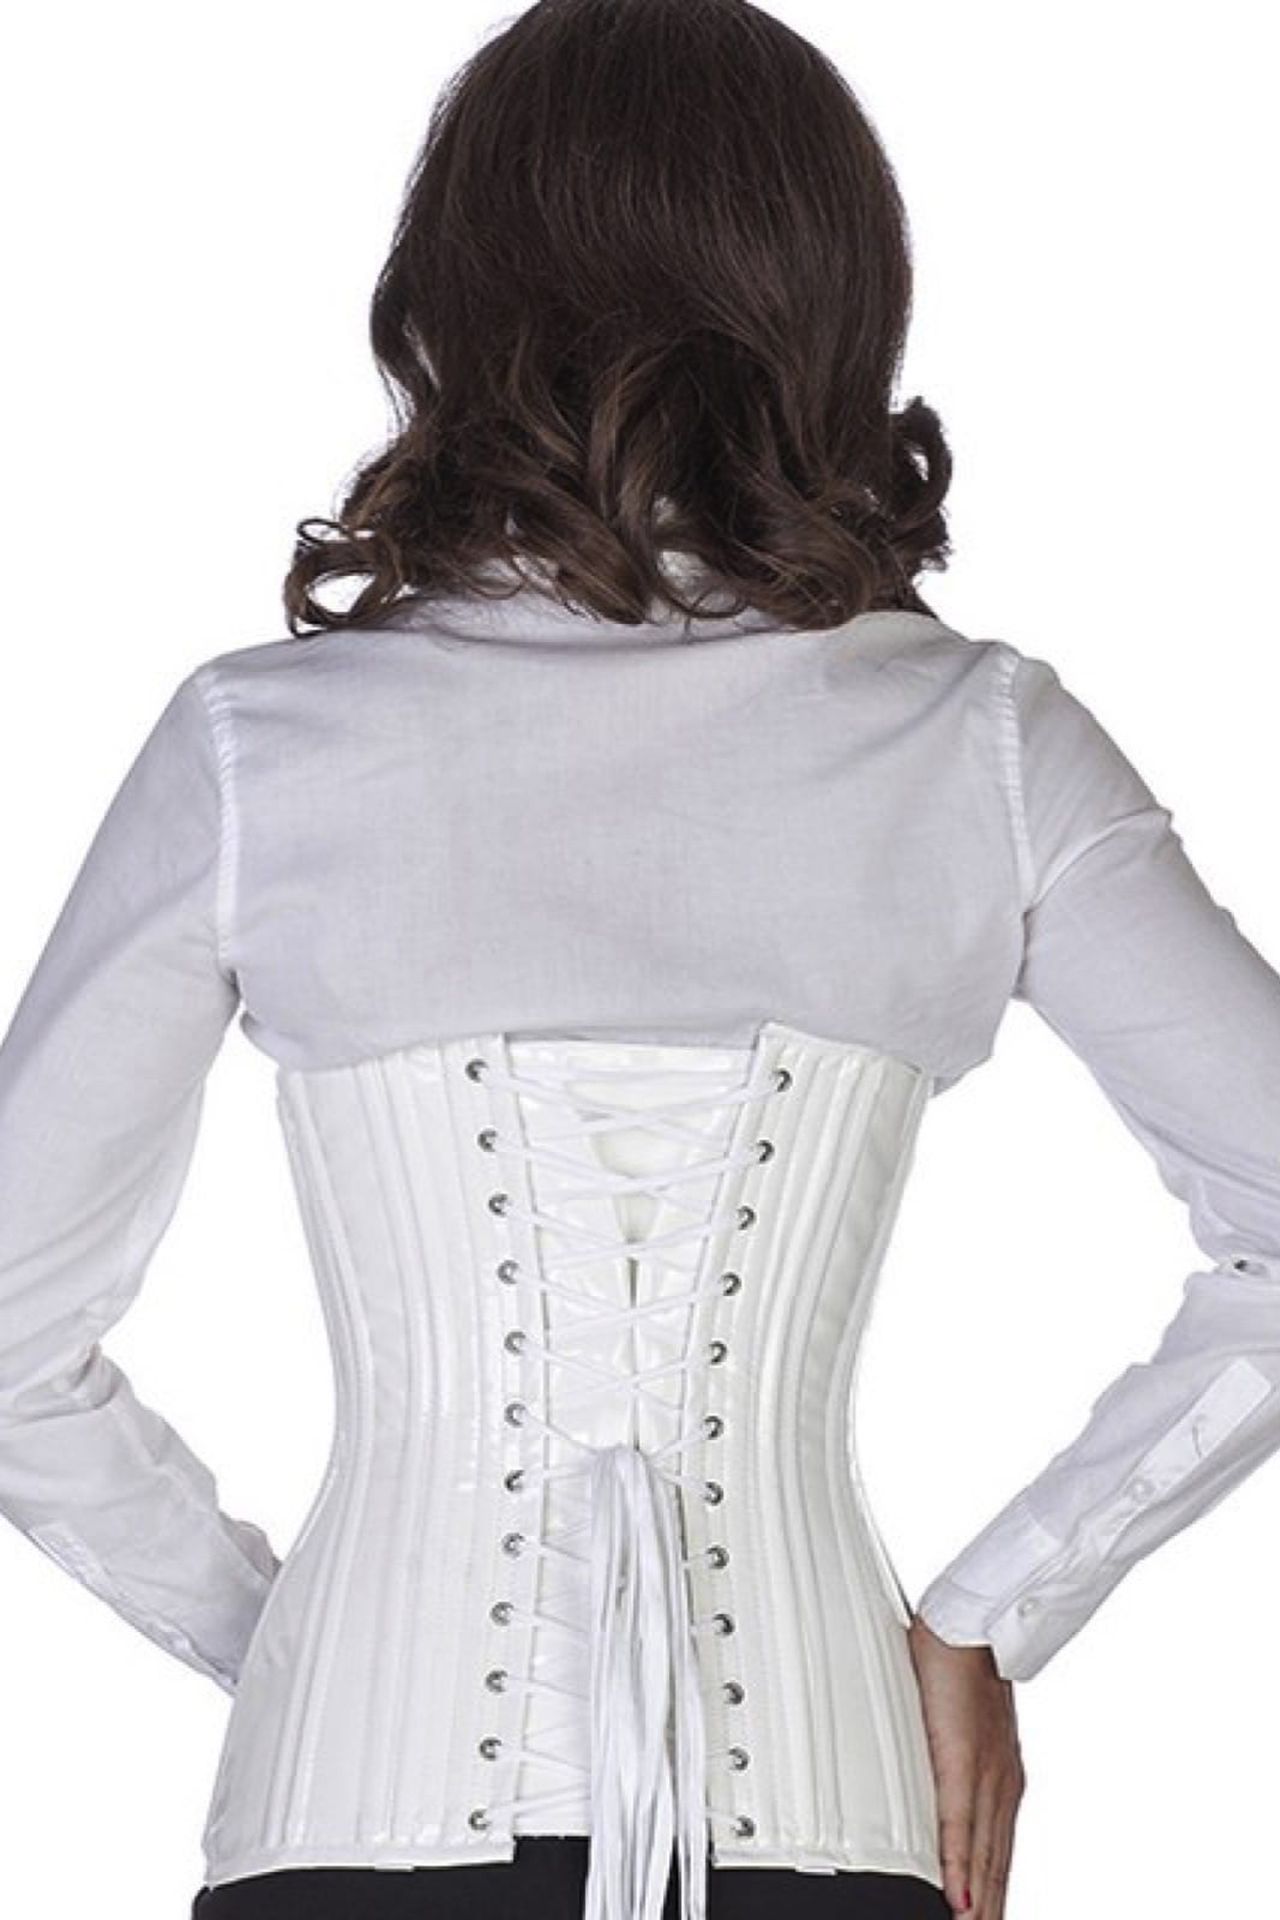 Lak corset wit onderborst rond gevormd Korset pn76